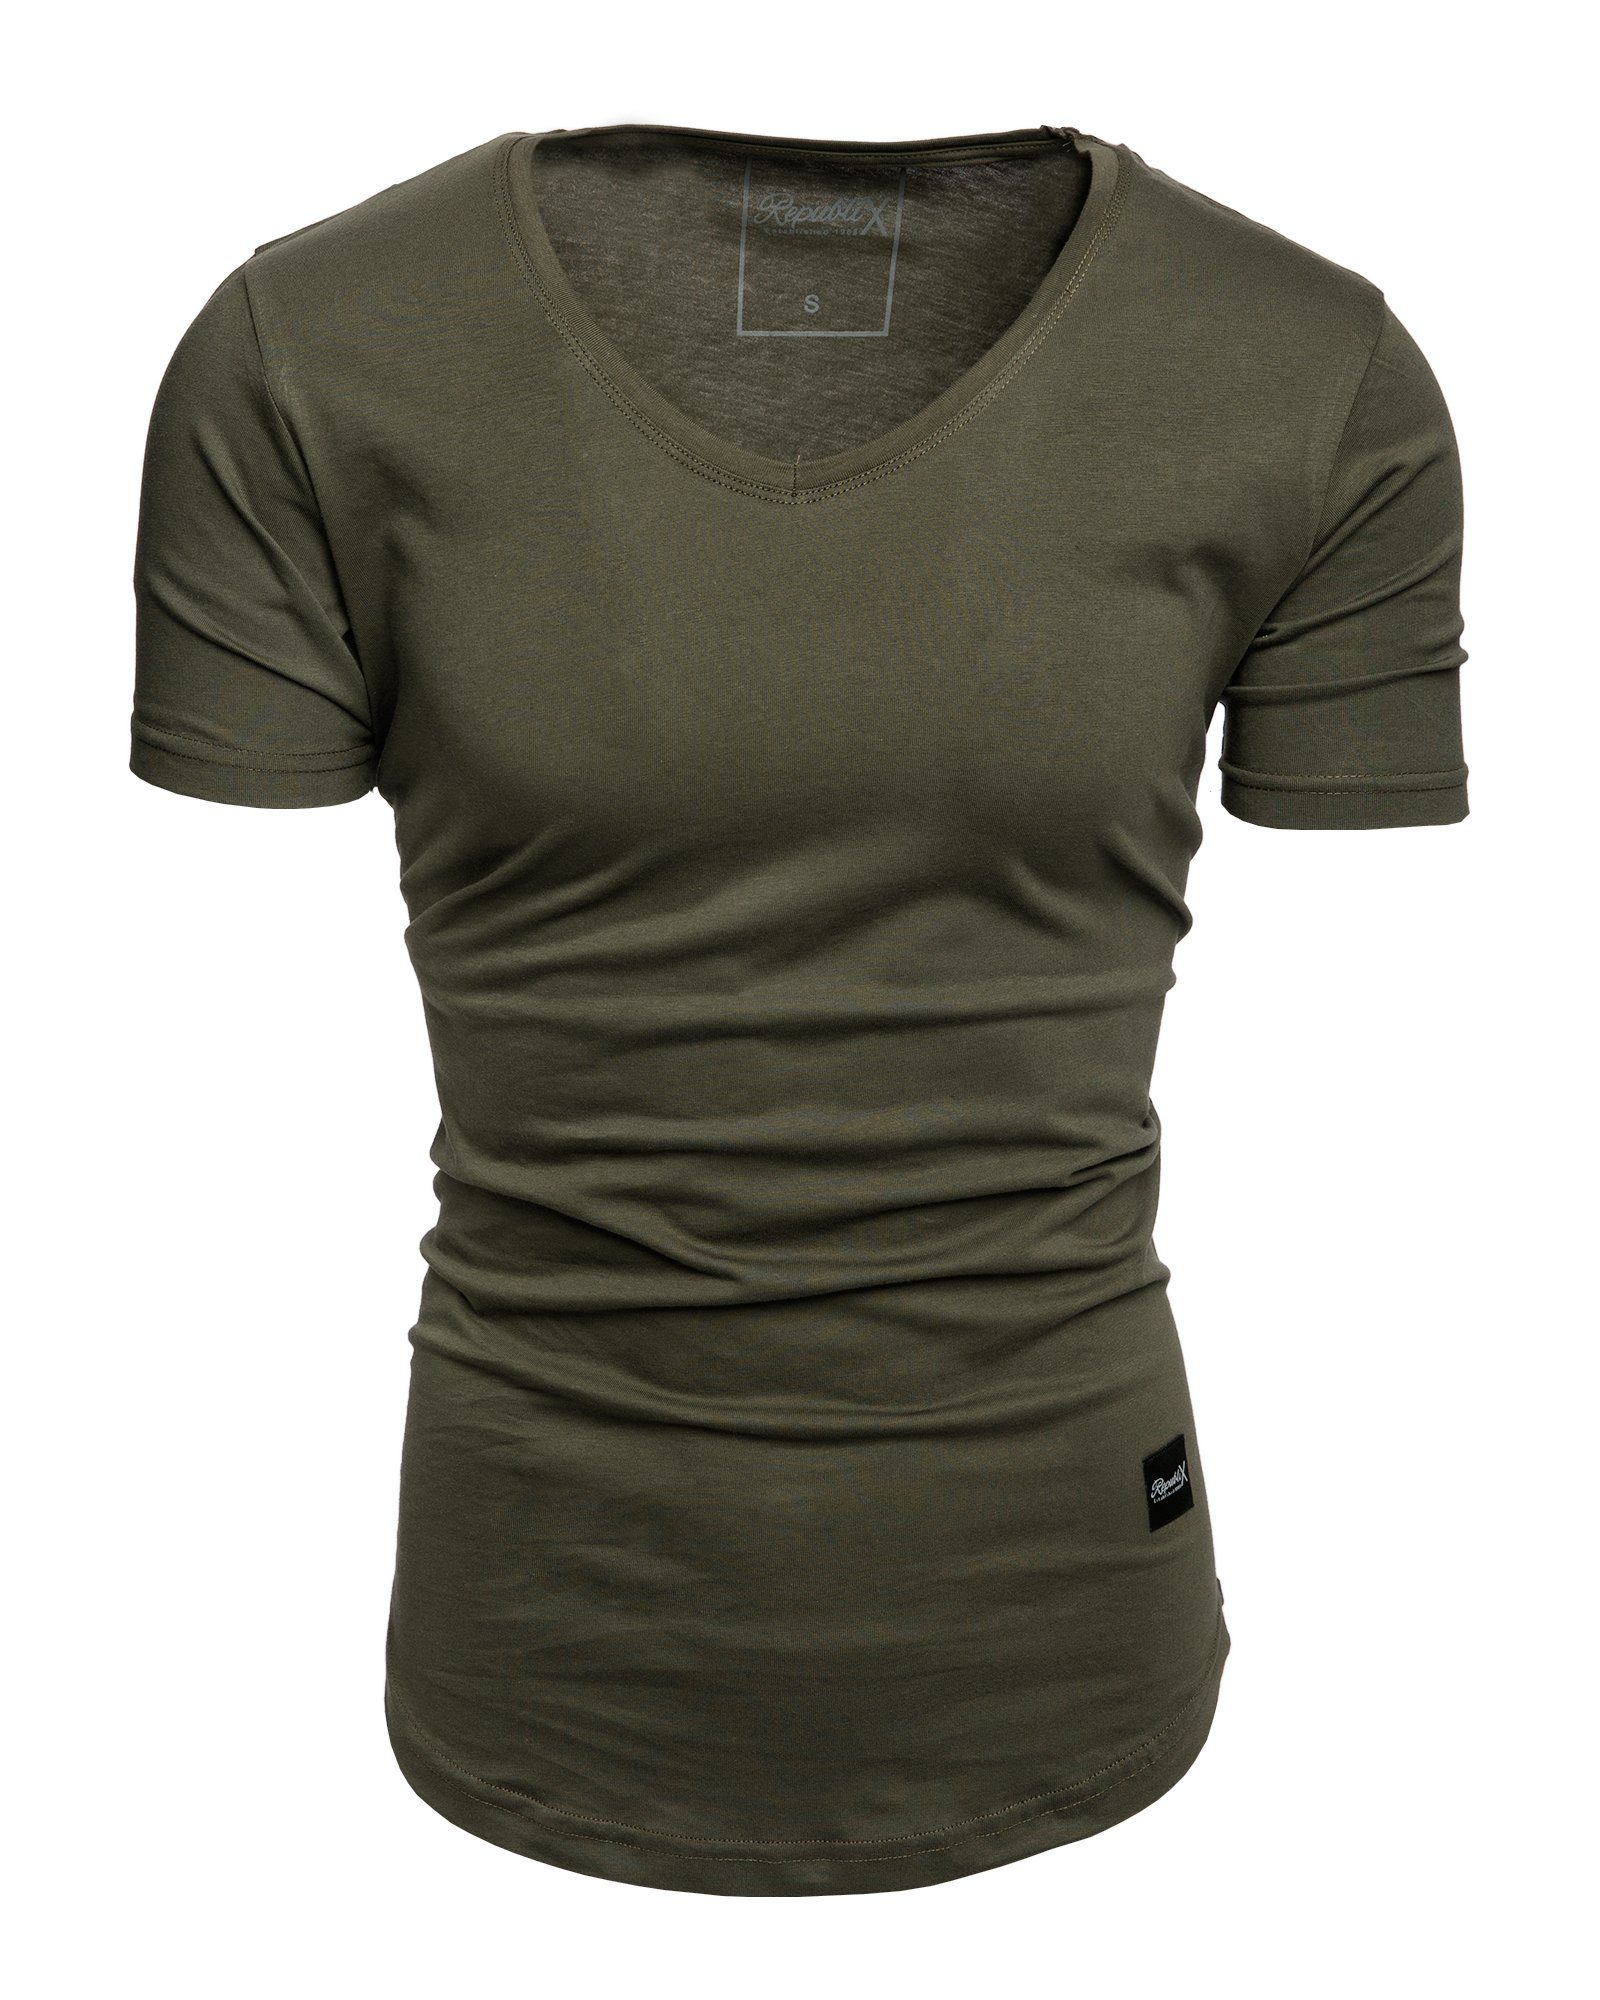 REPUBLIX T-Shirt BRANDON Herren Oversize Basic Shirt mit V-Ausschnitt